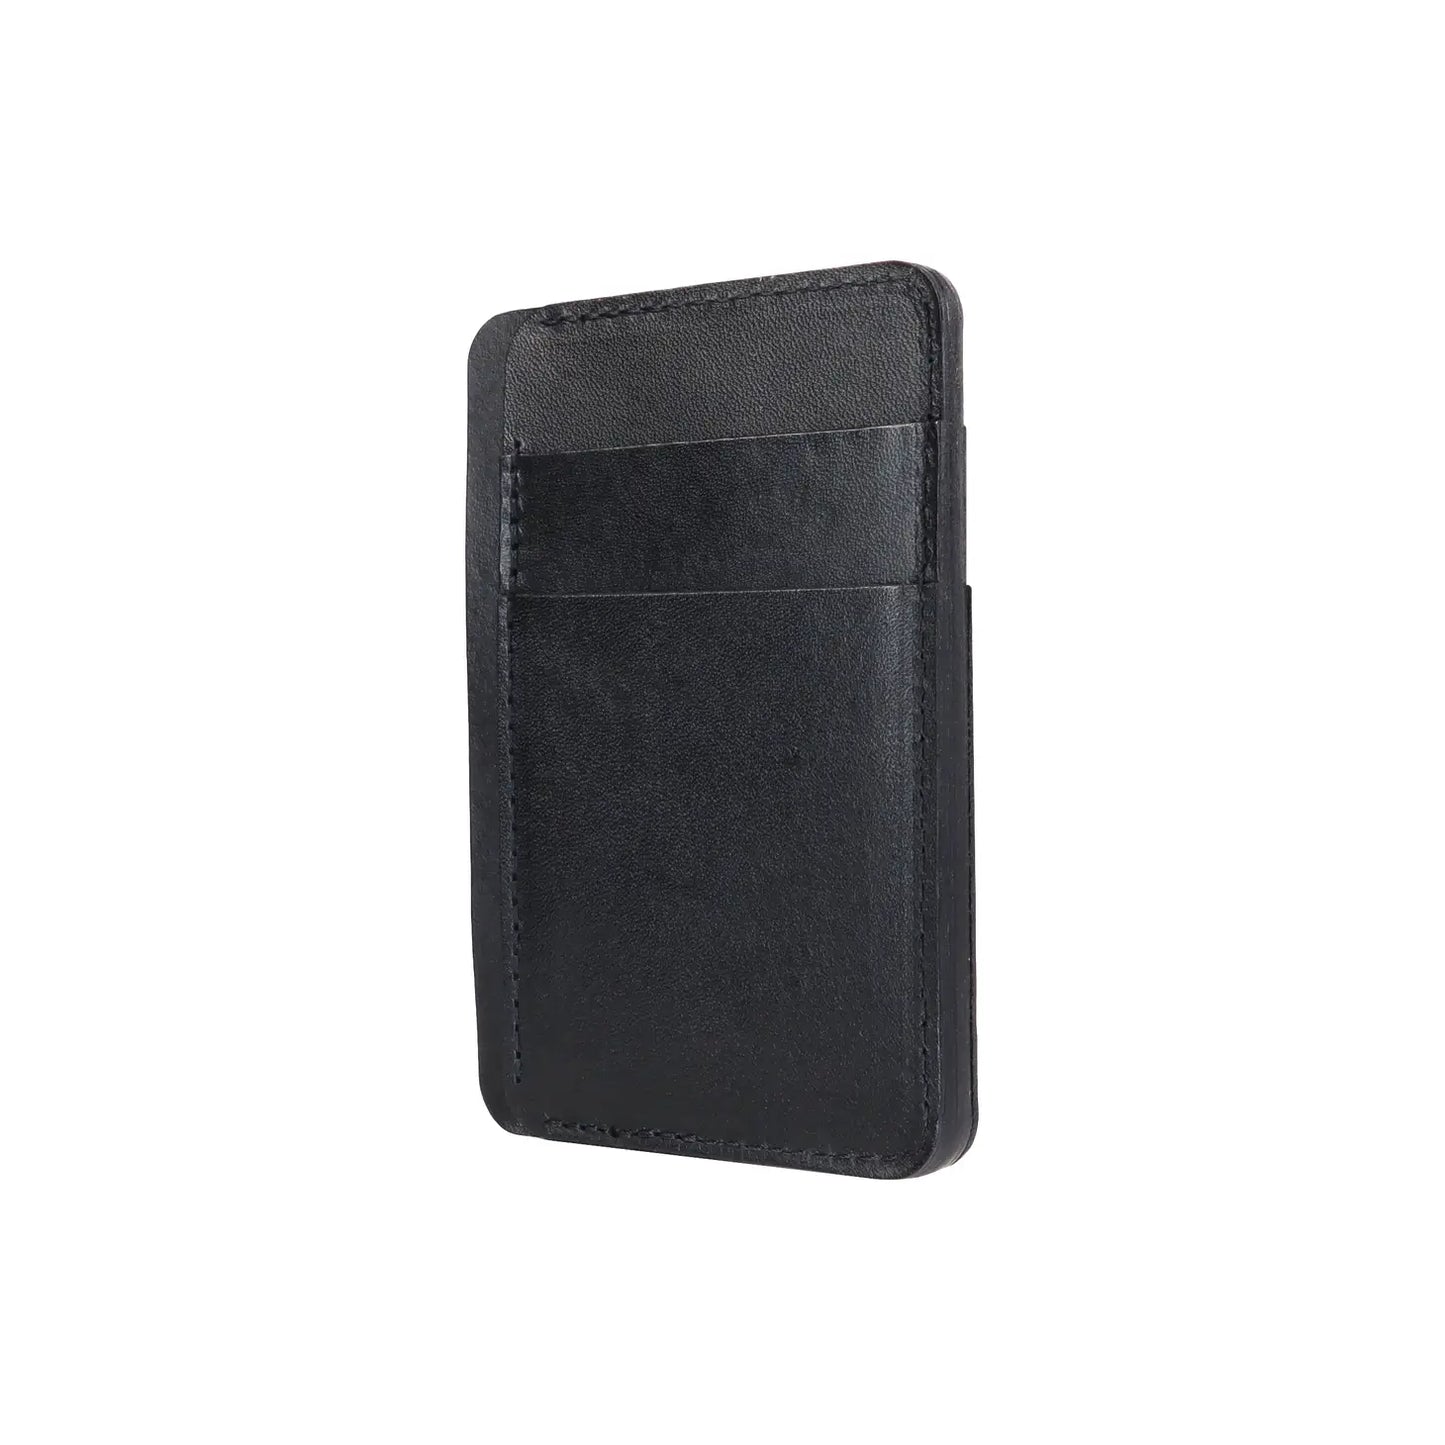 Cardholder Leather Wallet 7 POCKET (Black, Brown)